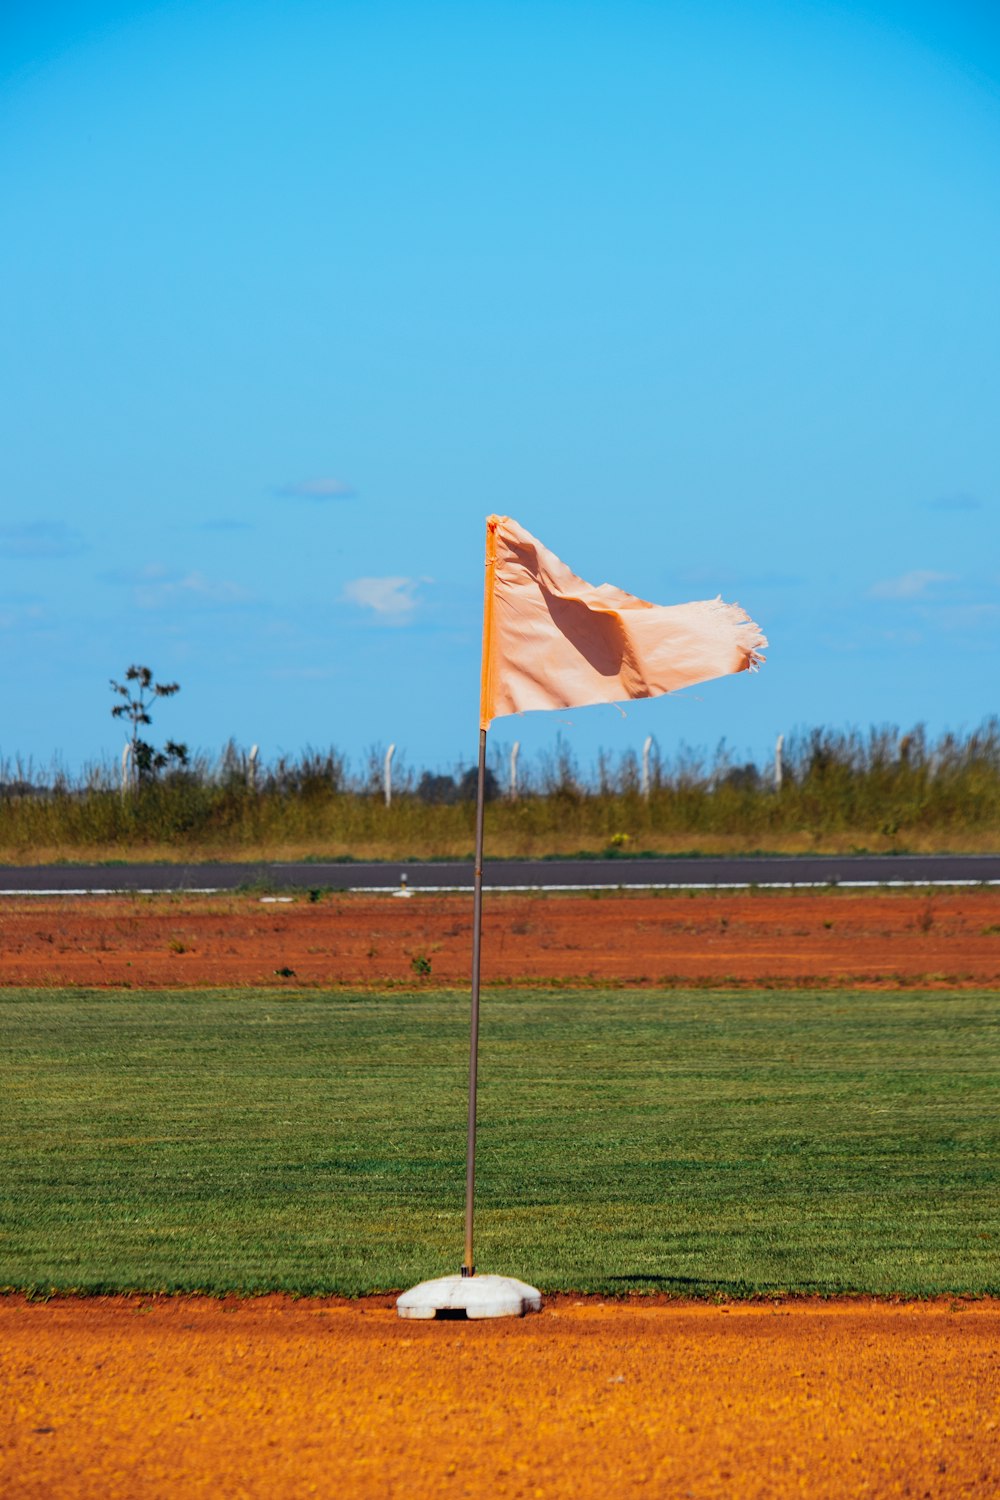 un drapeau sur un terrain de baseball avec une base en terre battue